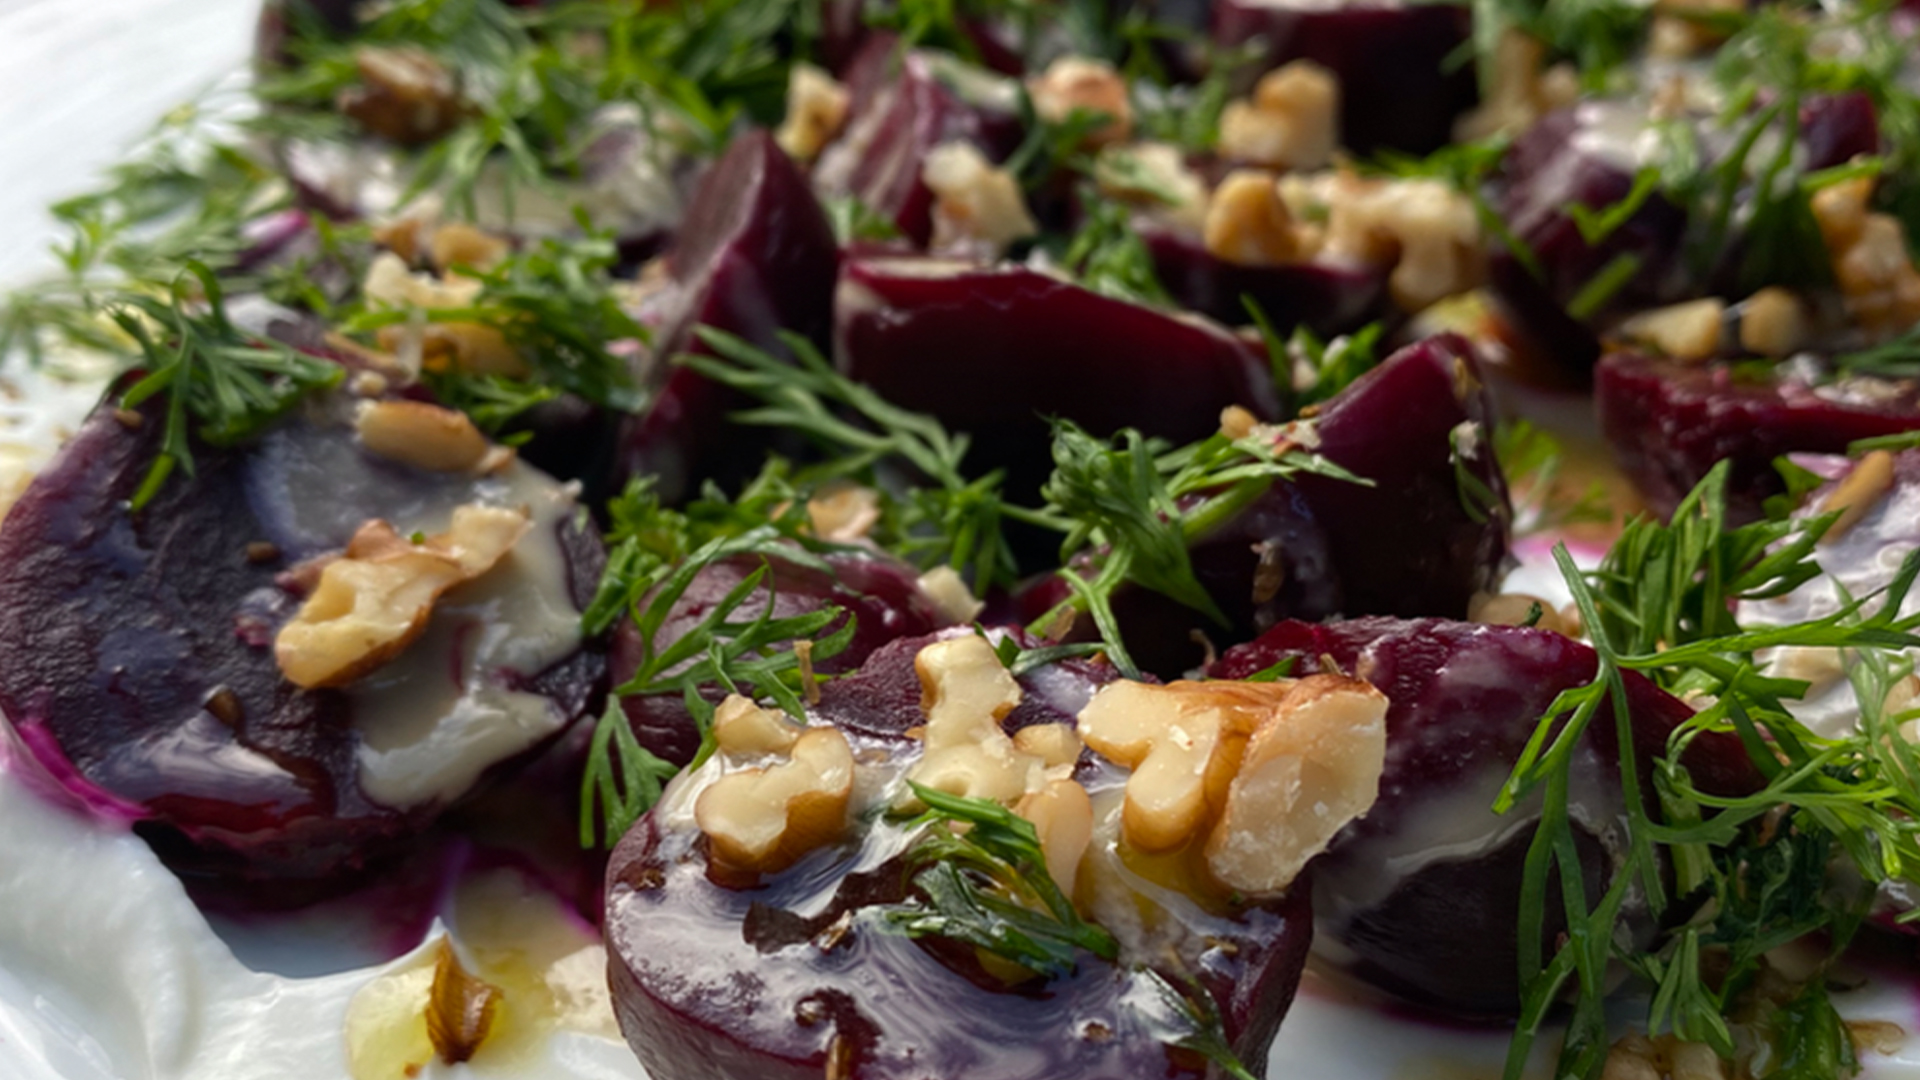 Pickled beet salad